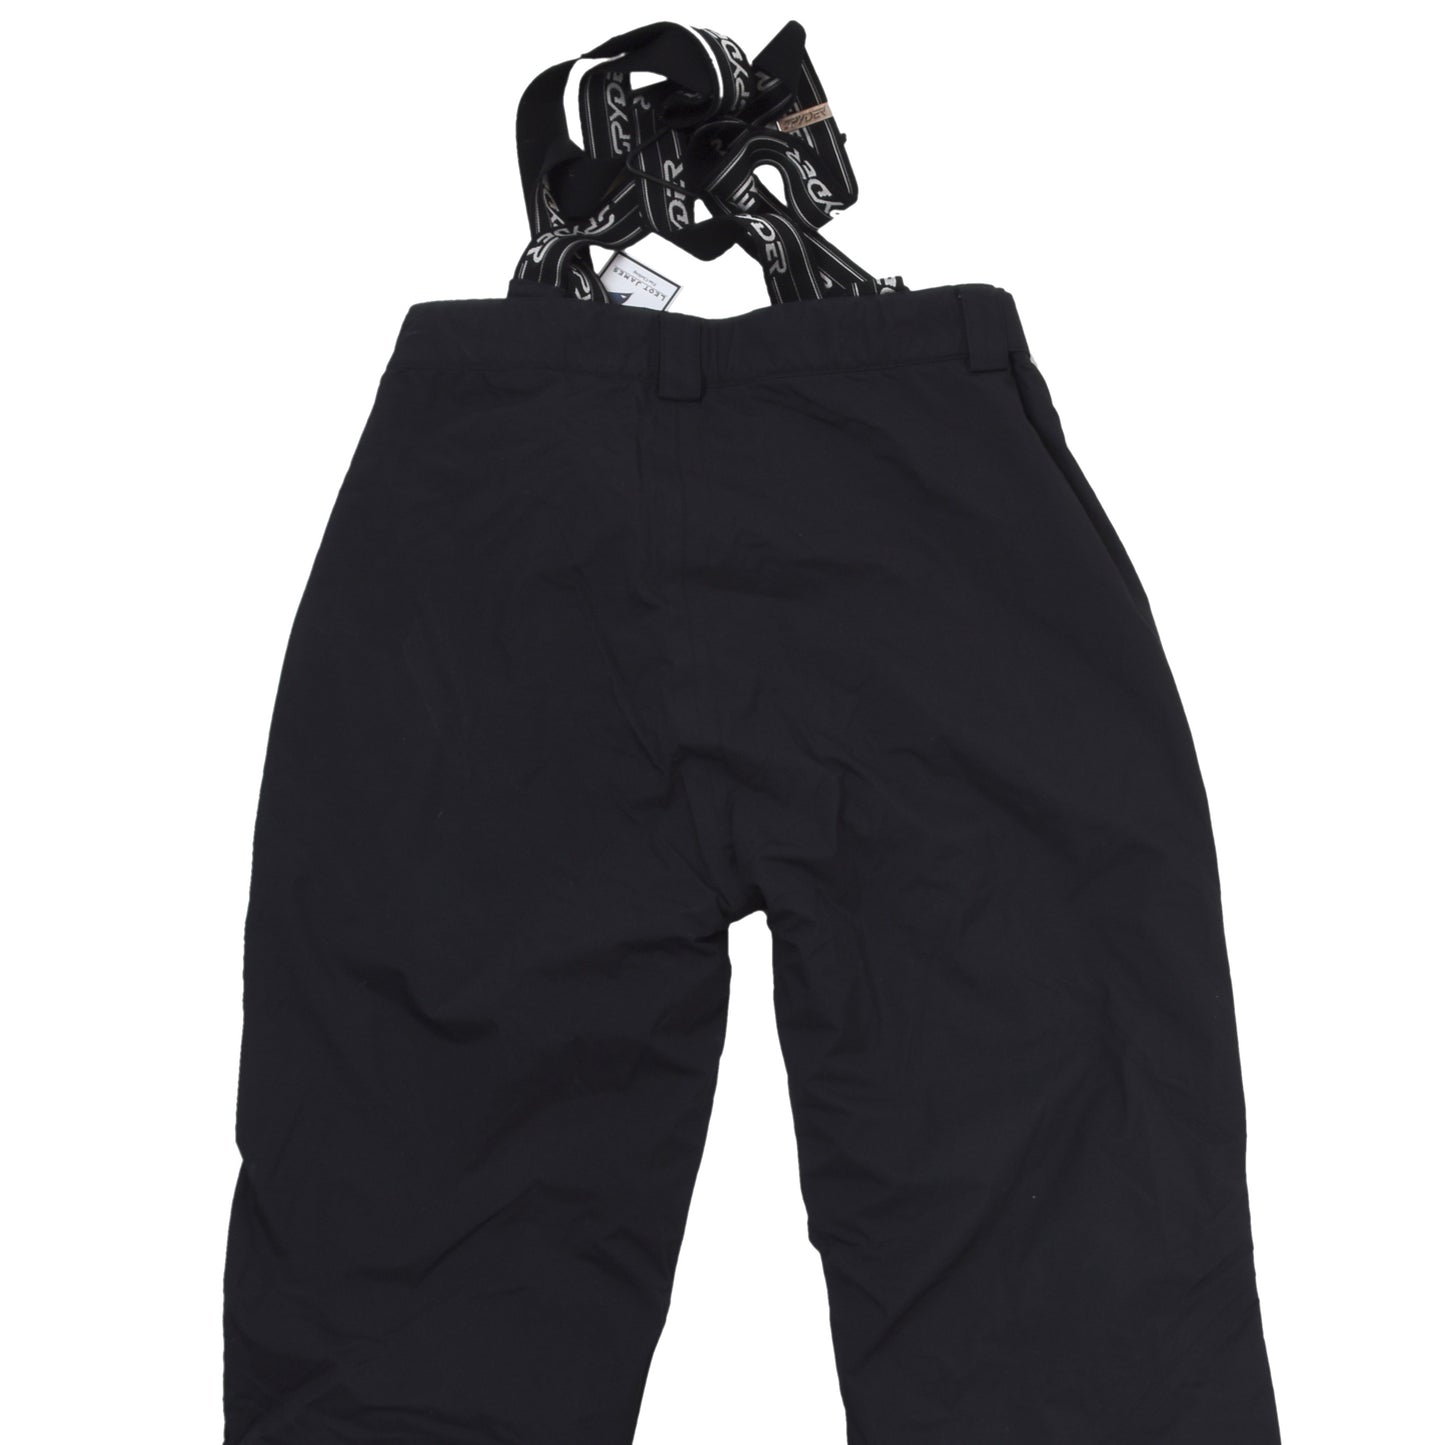 Spyder XT 5000 Snowboard/Ski Pants Size 54/XL - Black